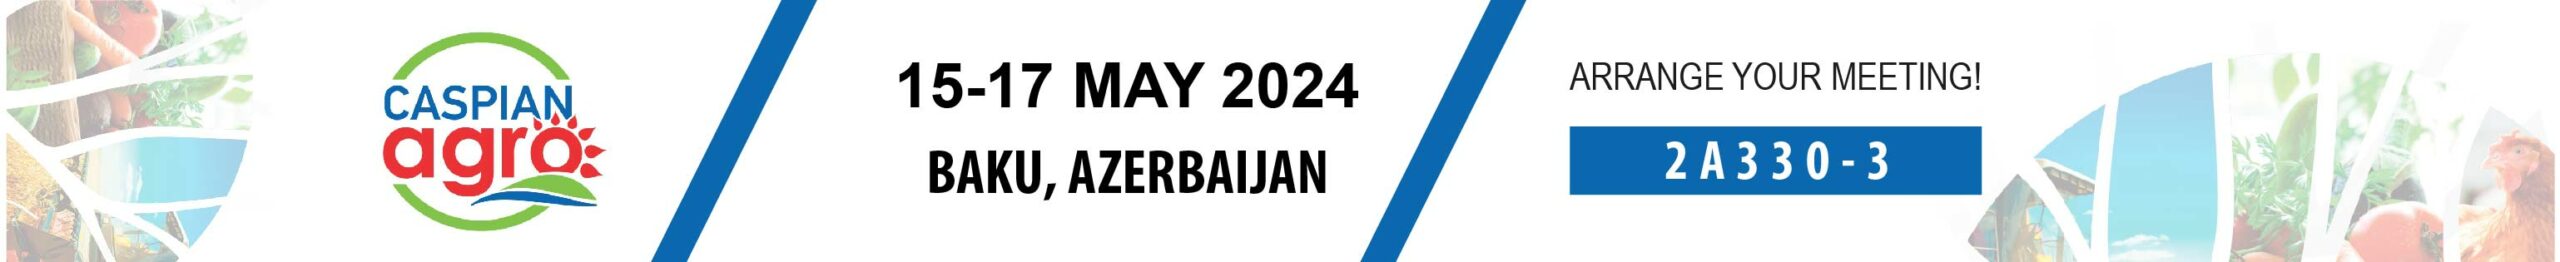 CASPIAN AGRO 2024-banner